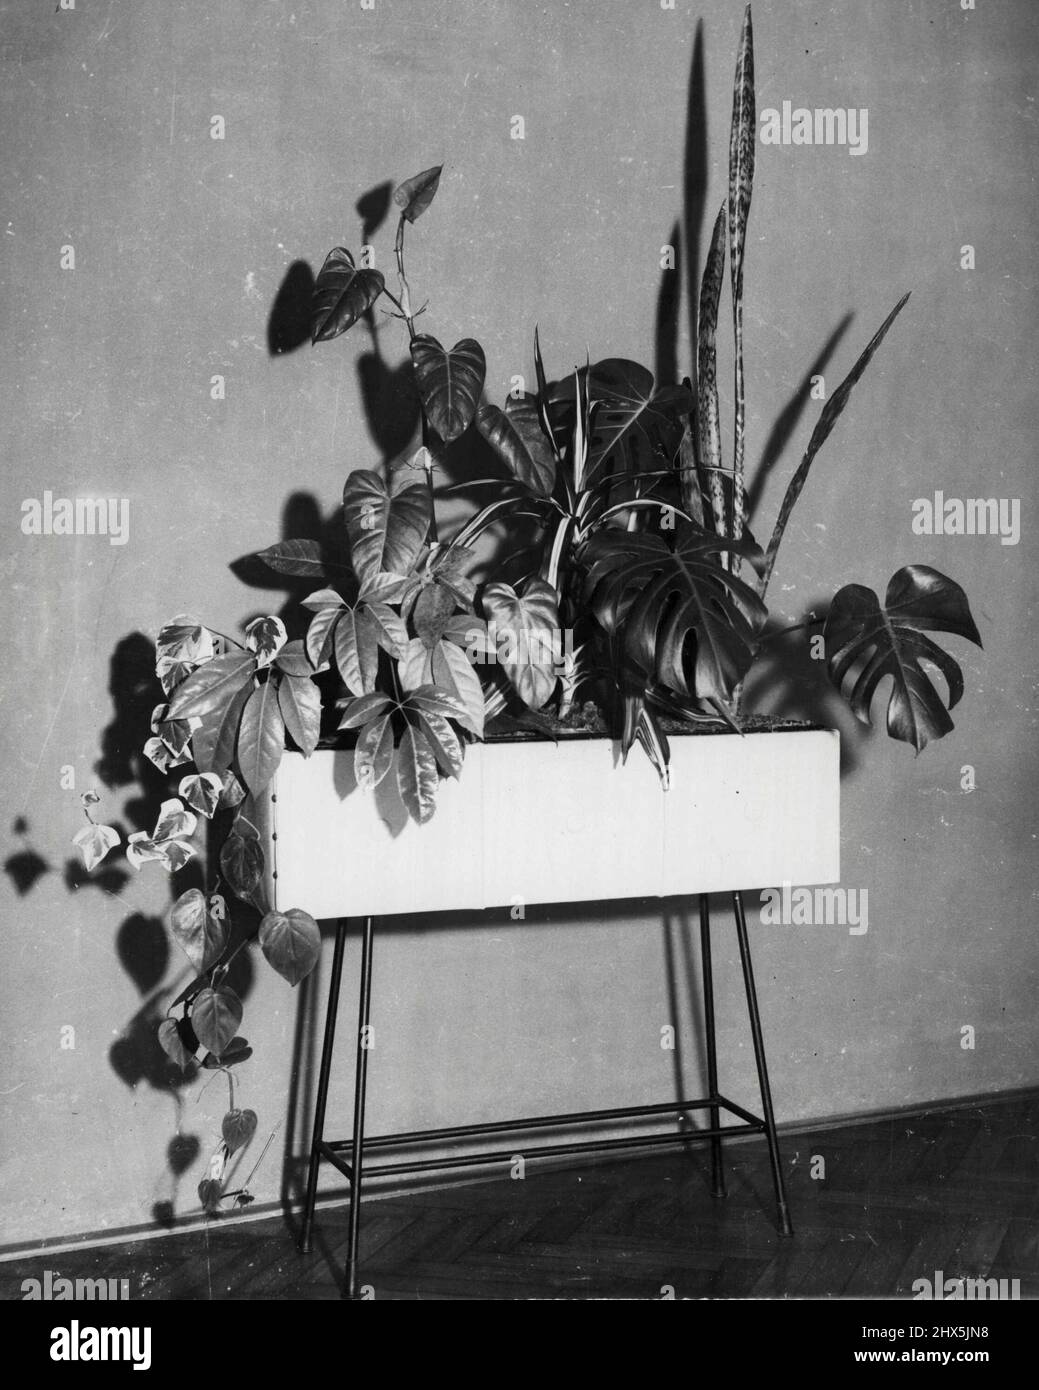 American lvy, Philodendron Cordatum, Brassia, Philodendron erubescens, Dracaena, Monstera Deliciosa, Sansevieria. April 25, 1955. Stock Photo